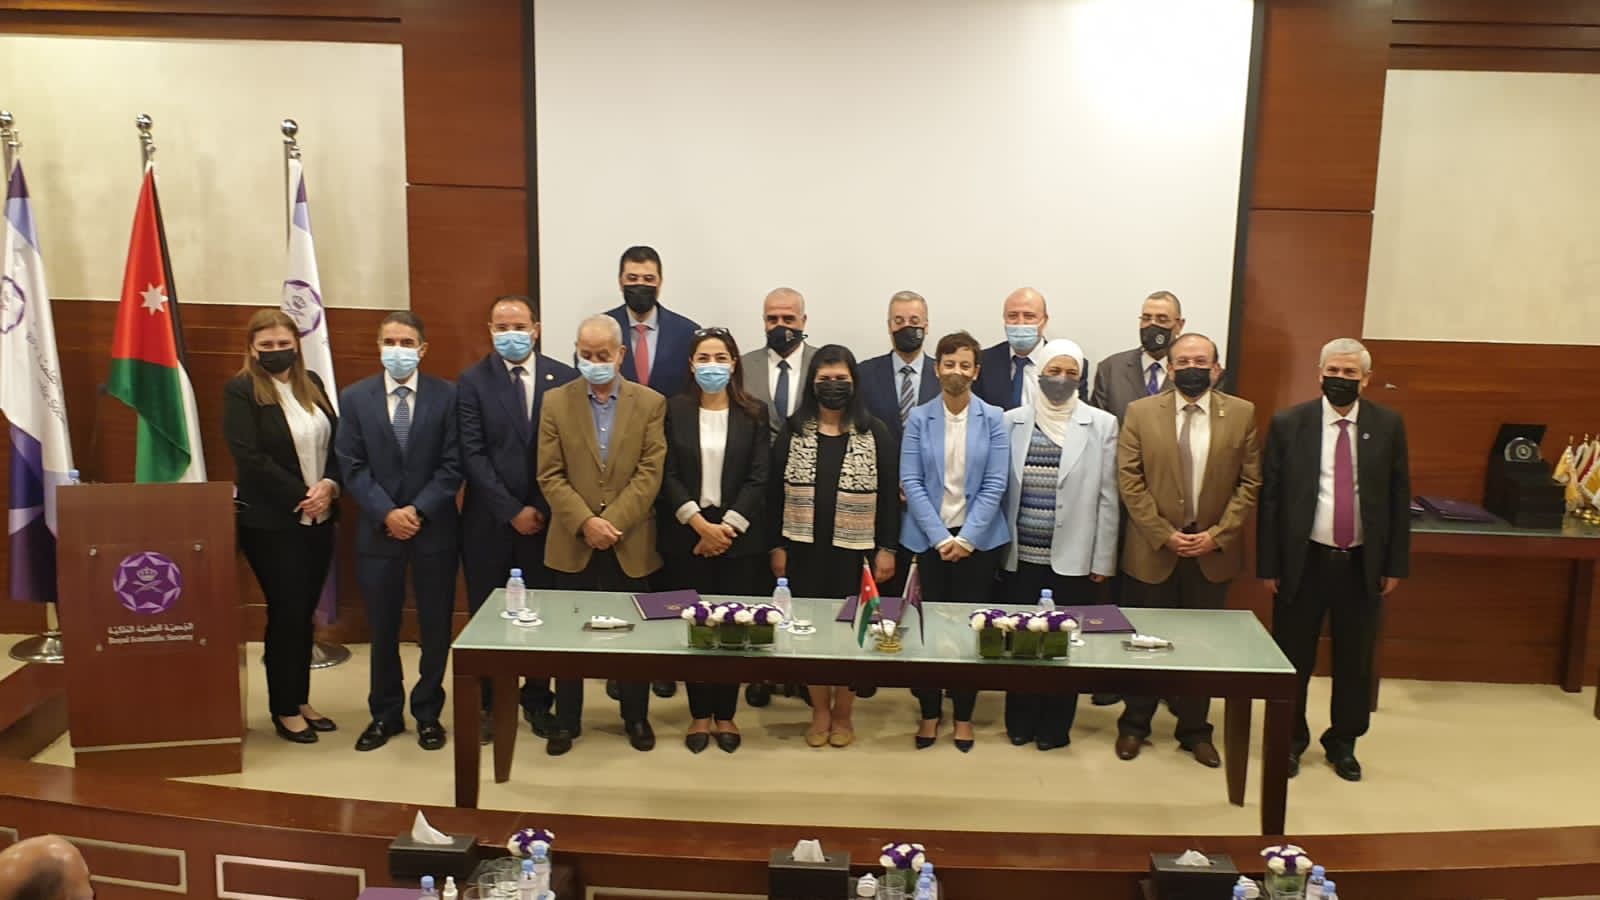  توقيع اتفاقية تعاون بين جامعة الحسين بن طلال والجمعية العلمية الملكية. 